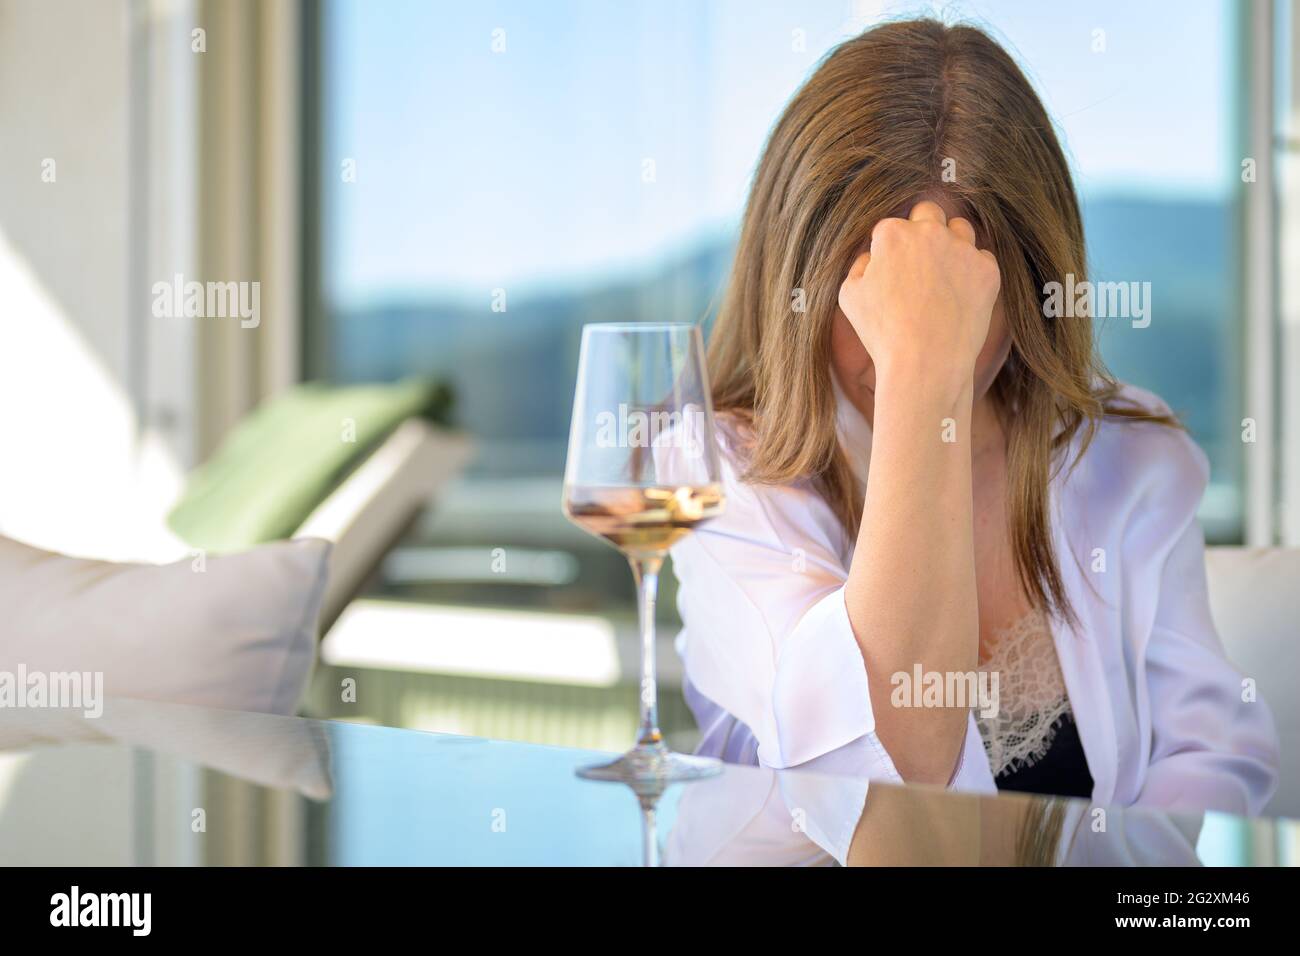 Depressive Frau, die tief mit einem Glas Rotwein vor ihrem Gesicht sitzt und ihre Stirn auf der Hand hält Stockfoto